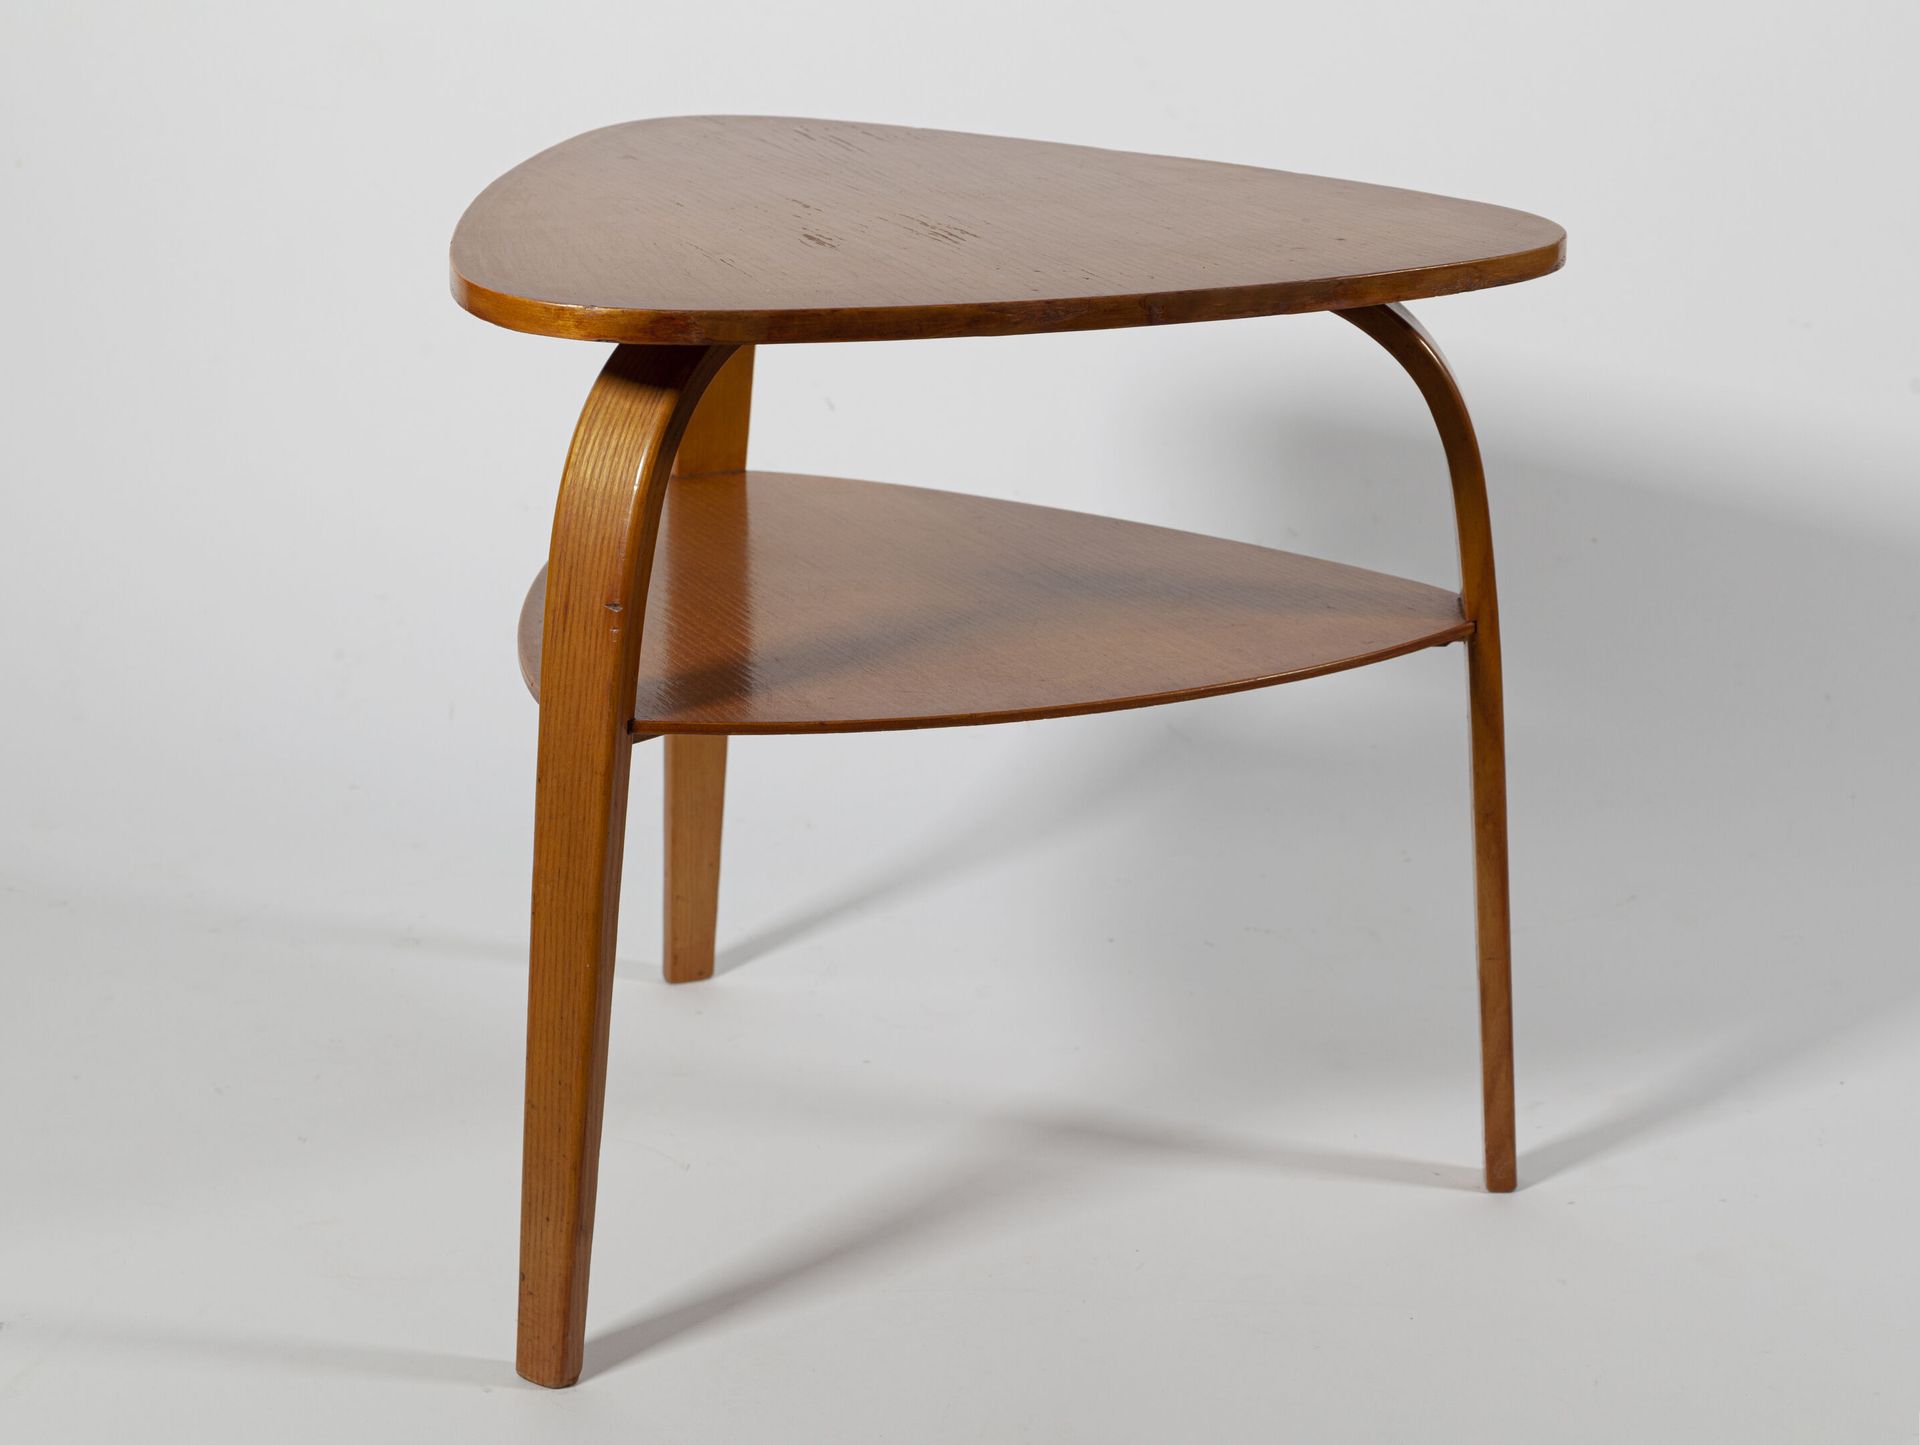 Null 胡戈-施泰纳 (1926 - 1991)

斯泰纳出版商

基座桌，"Bow Wood "模型，有两个胶合板的三角形托盘，靠在三个弯曲的腿上。

H.&hellip;